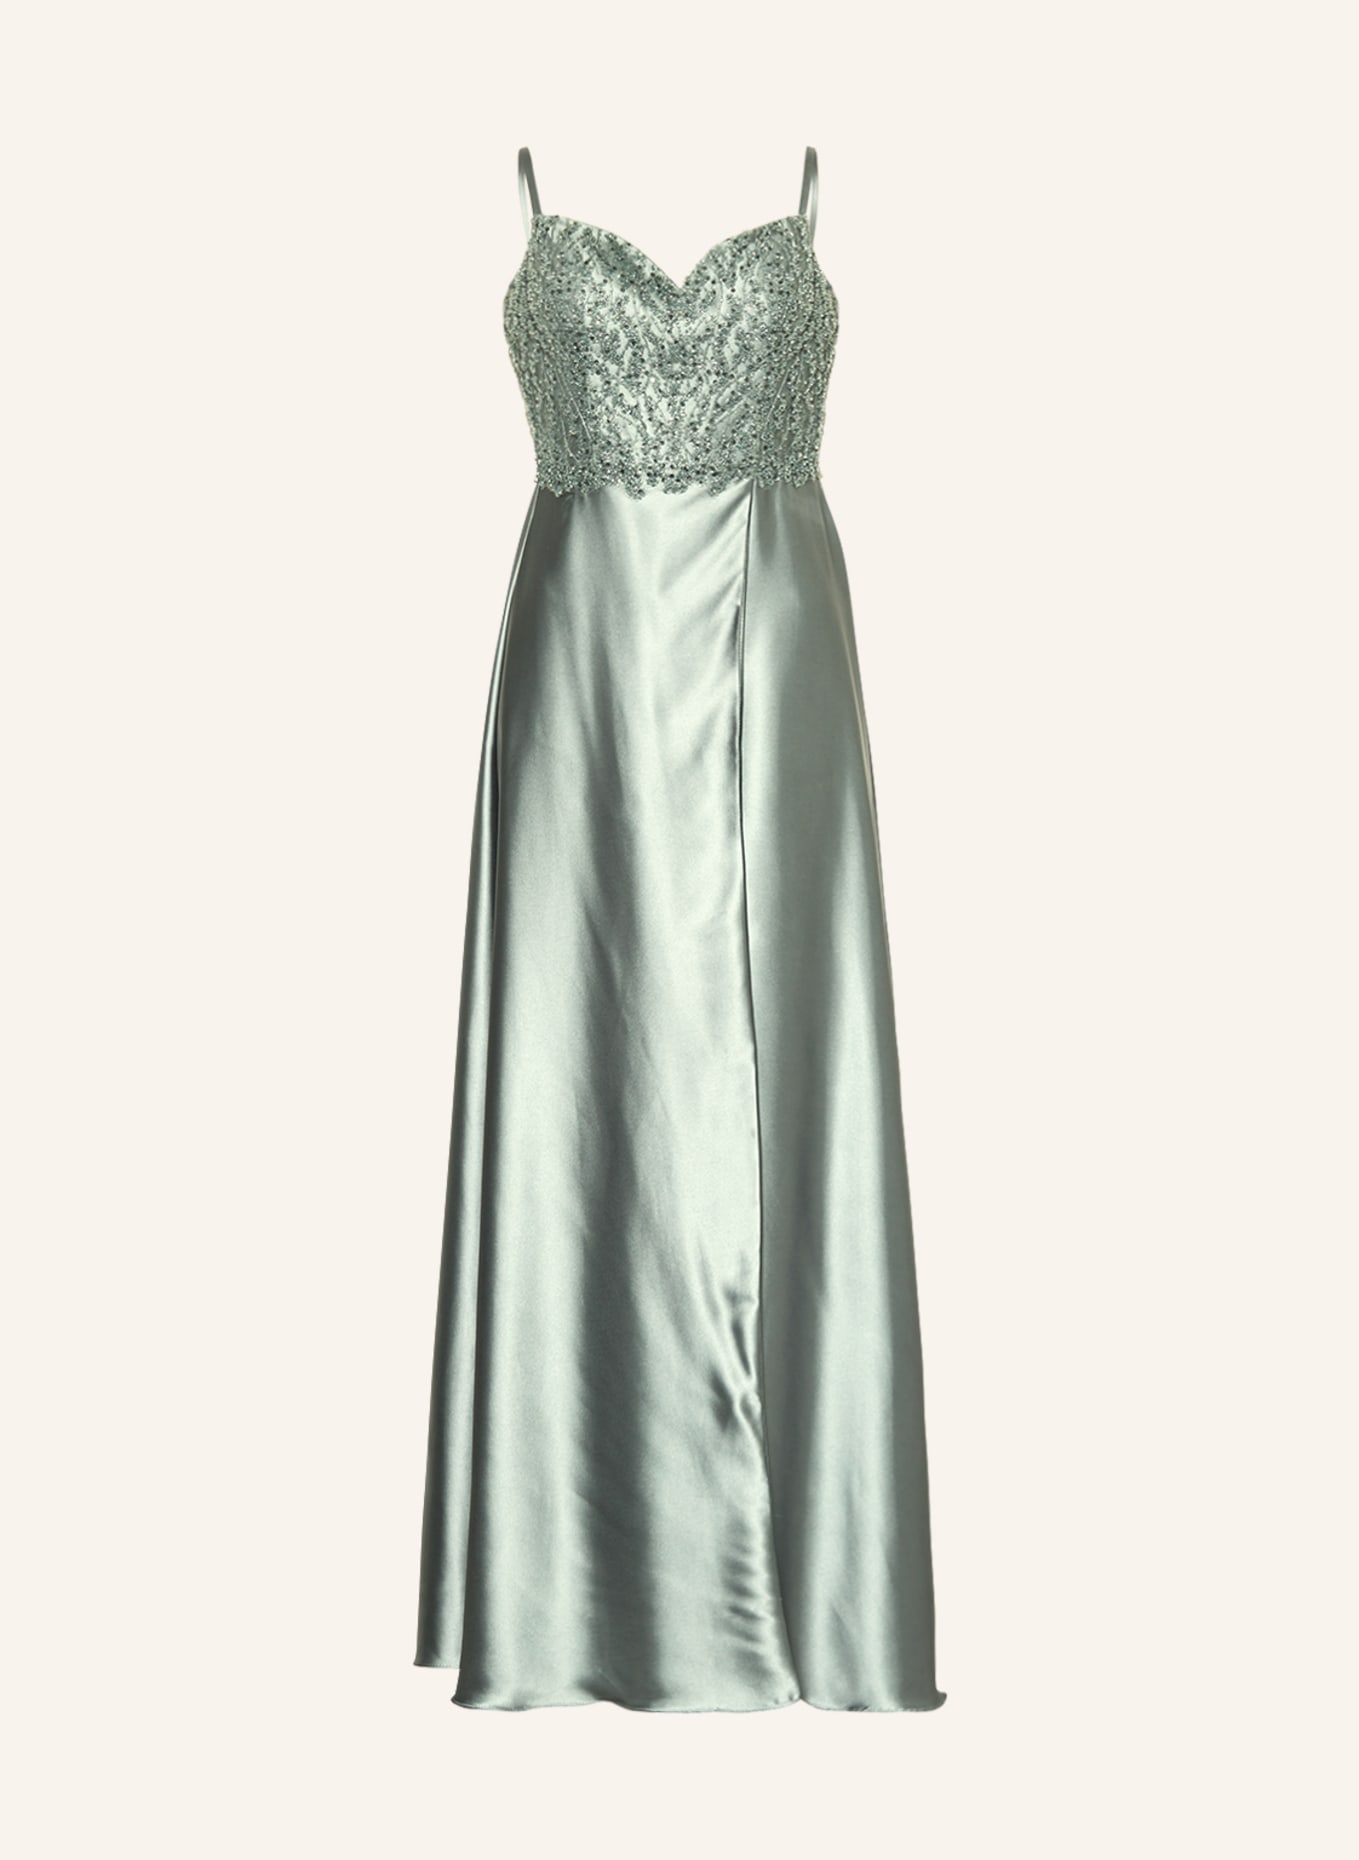 LAONA Abendkleid mit Pailletten und Schmuckperlen, Farbe: HELLGRÜN (Bild 1)